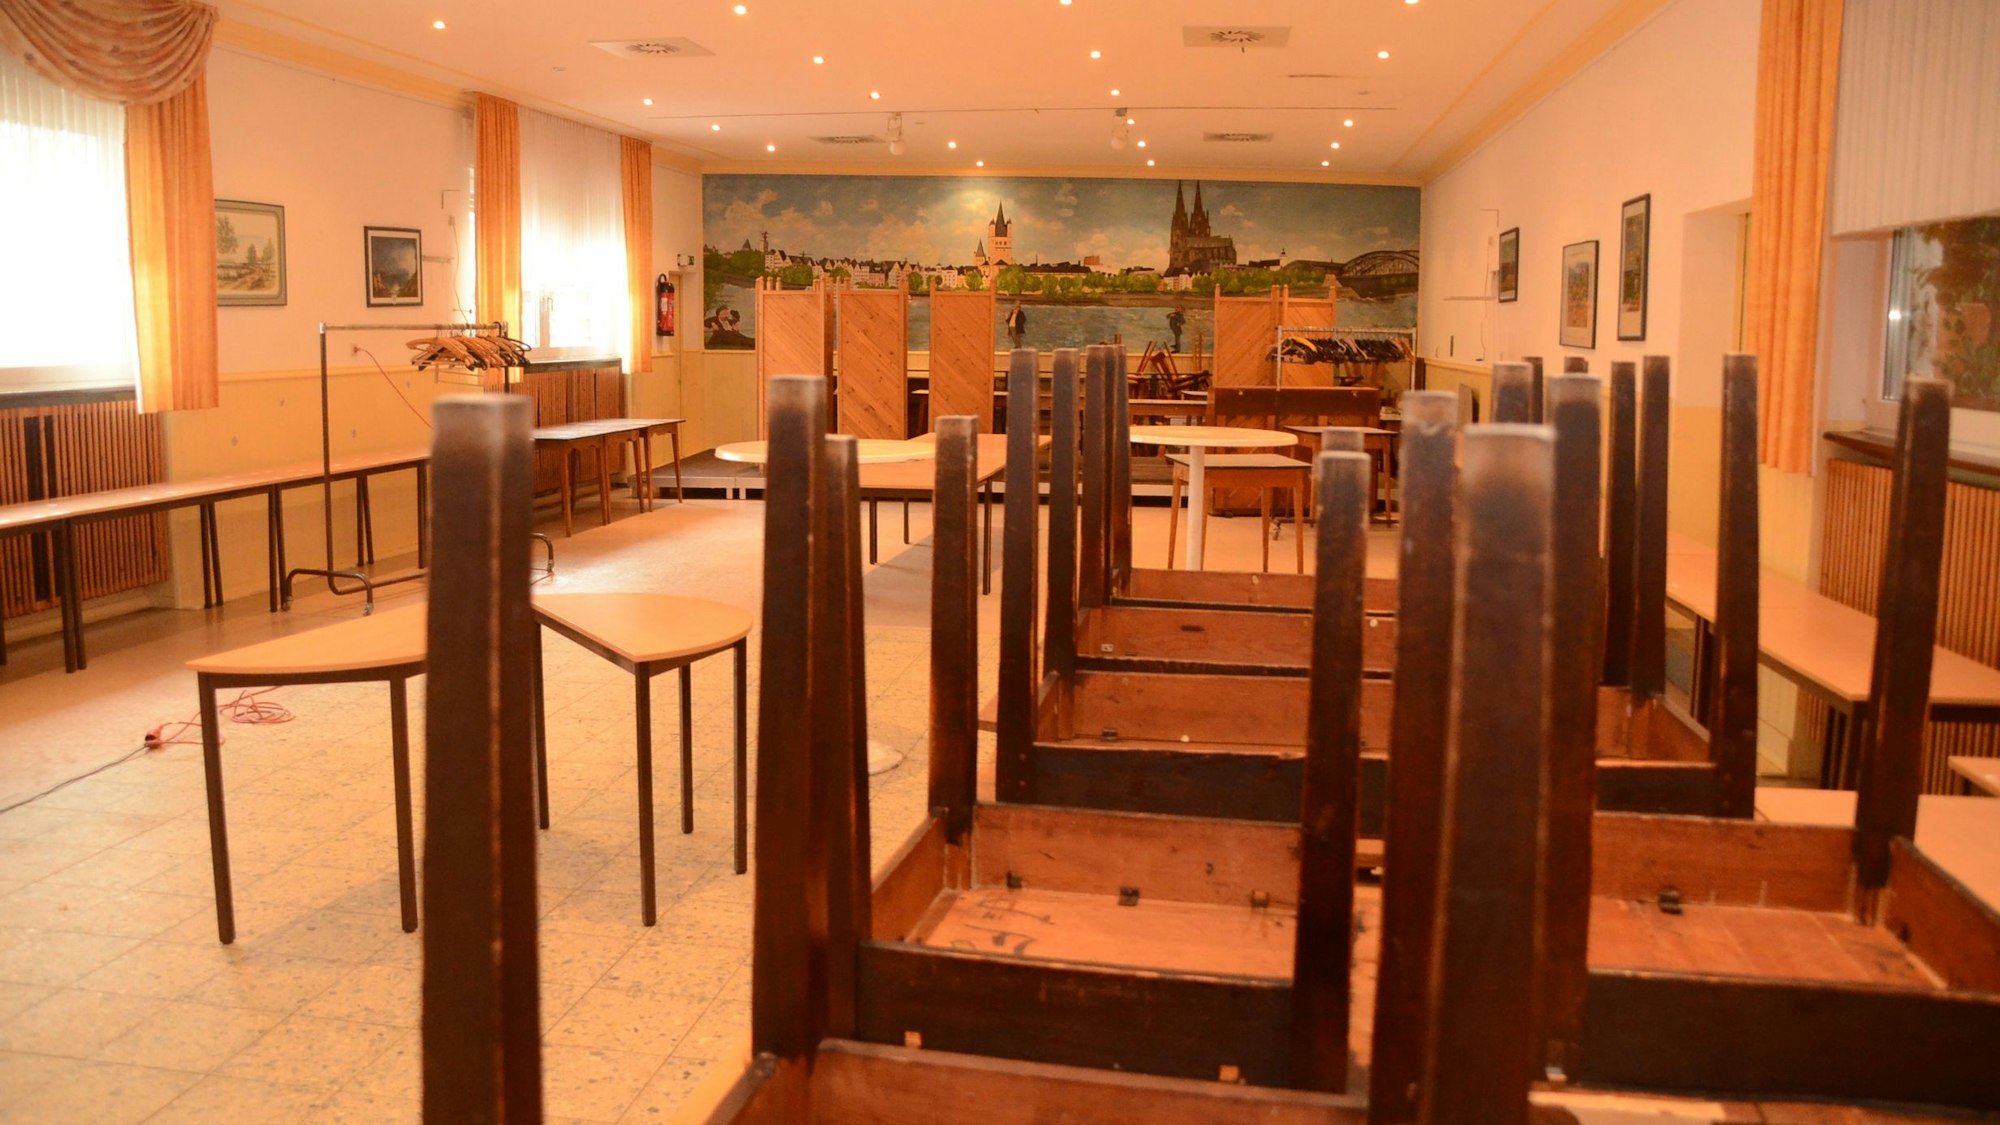 Der Saal einer Gaststätte: An der Wand ein gemaltes Panorama der Stadt Köln, rechts aufeinander gestellte Tische.